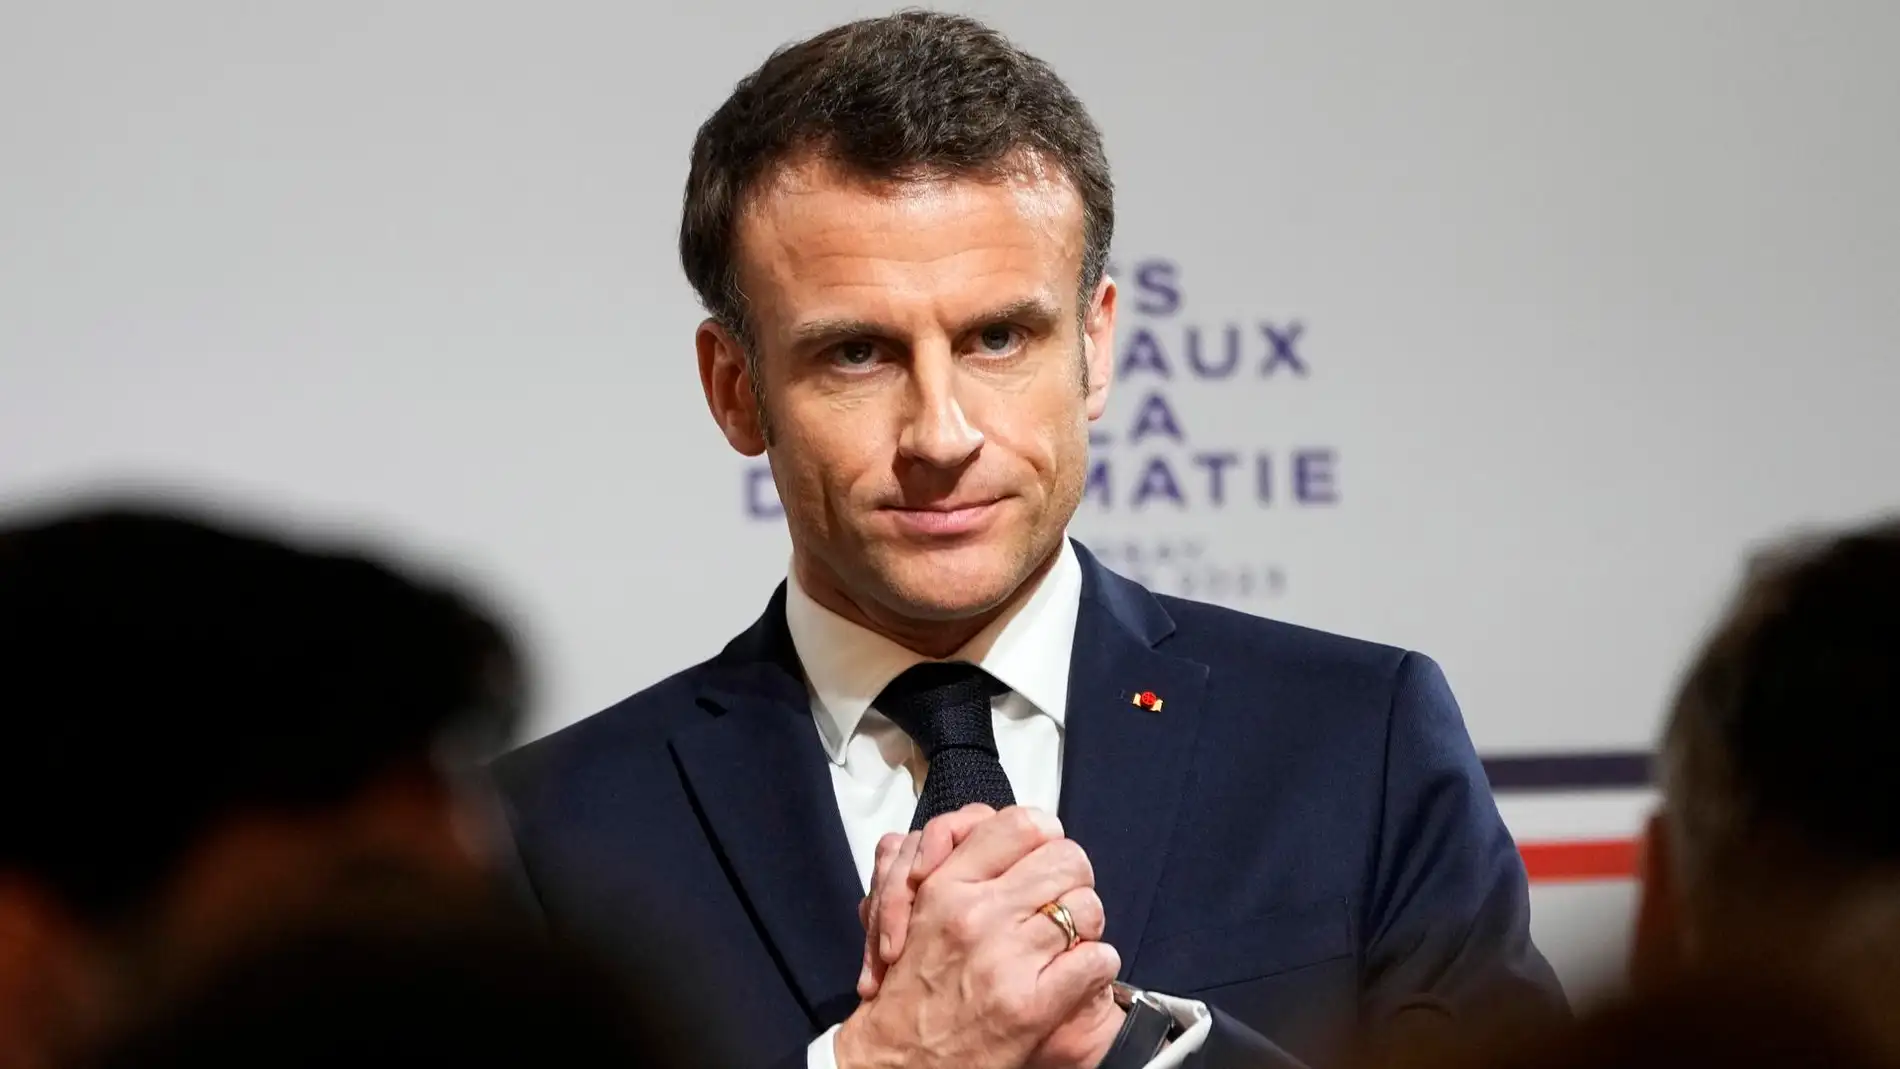 Qué dice la polémica reforma de pensiones de Macron que ha sido aprobada evitando el voto del Parlamento